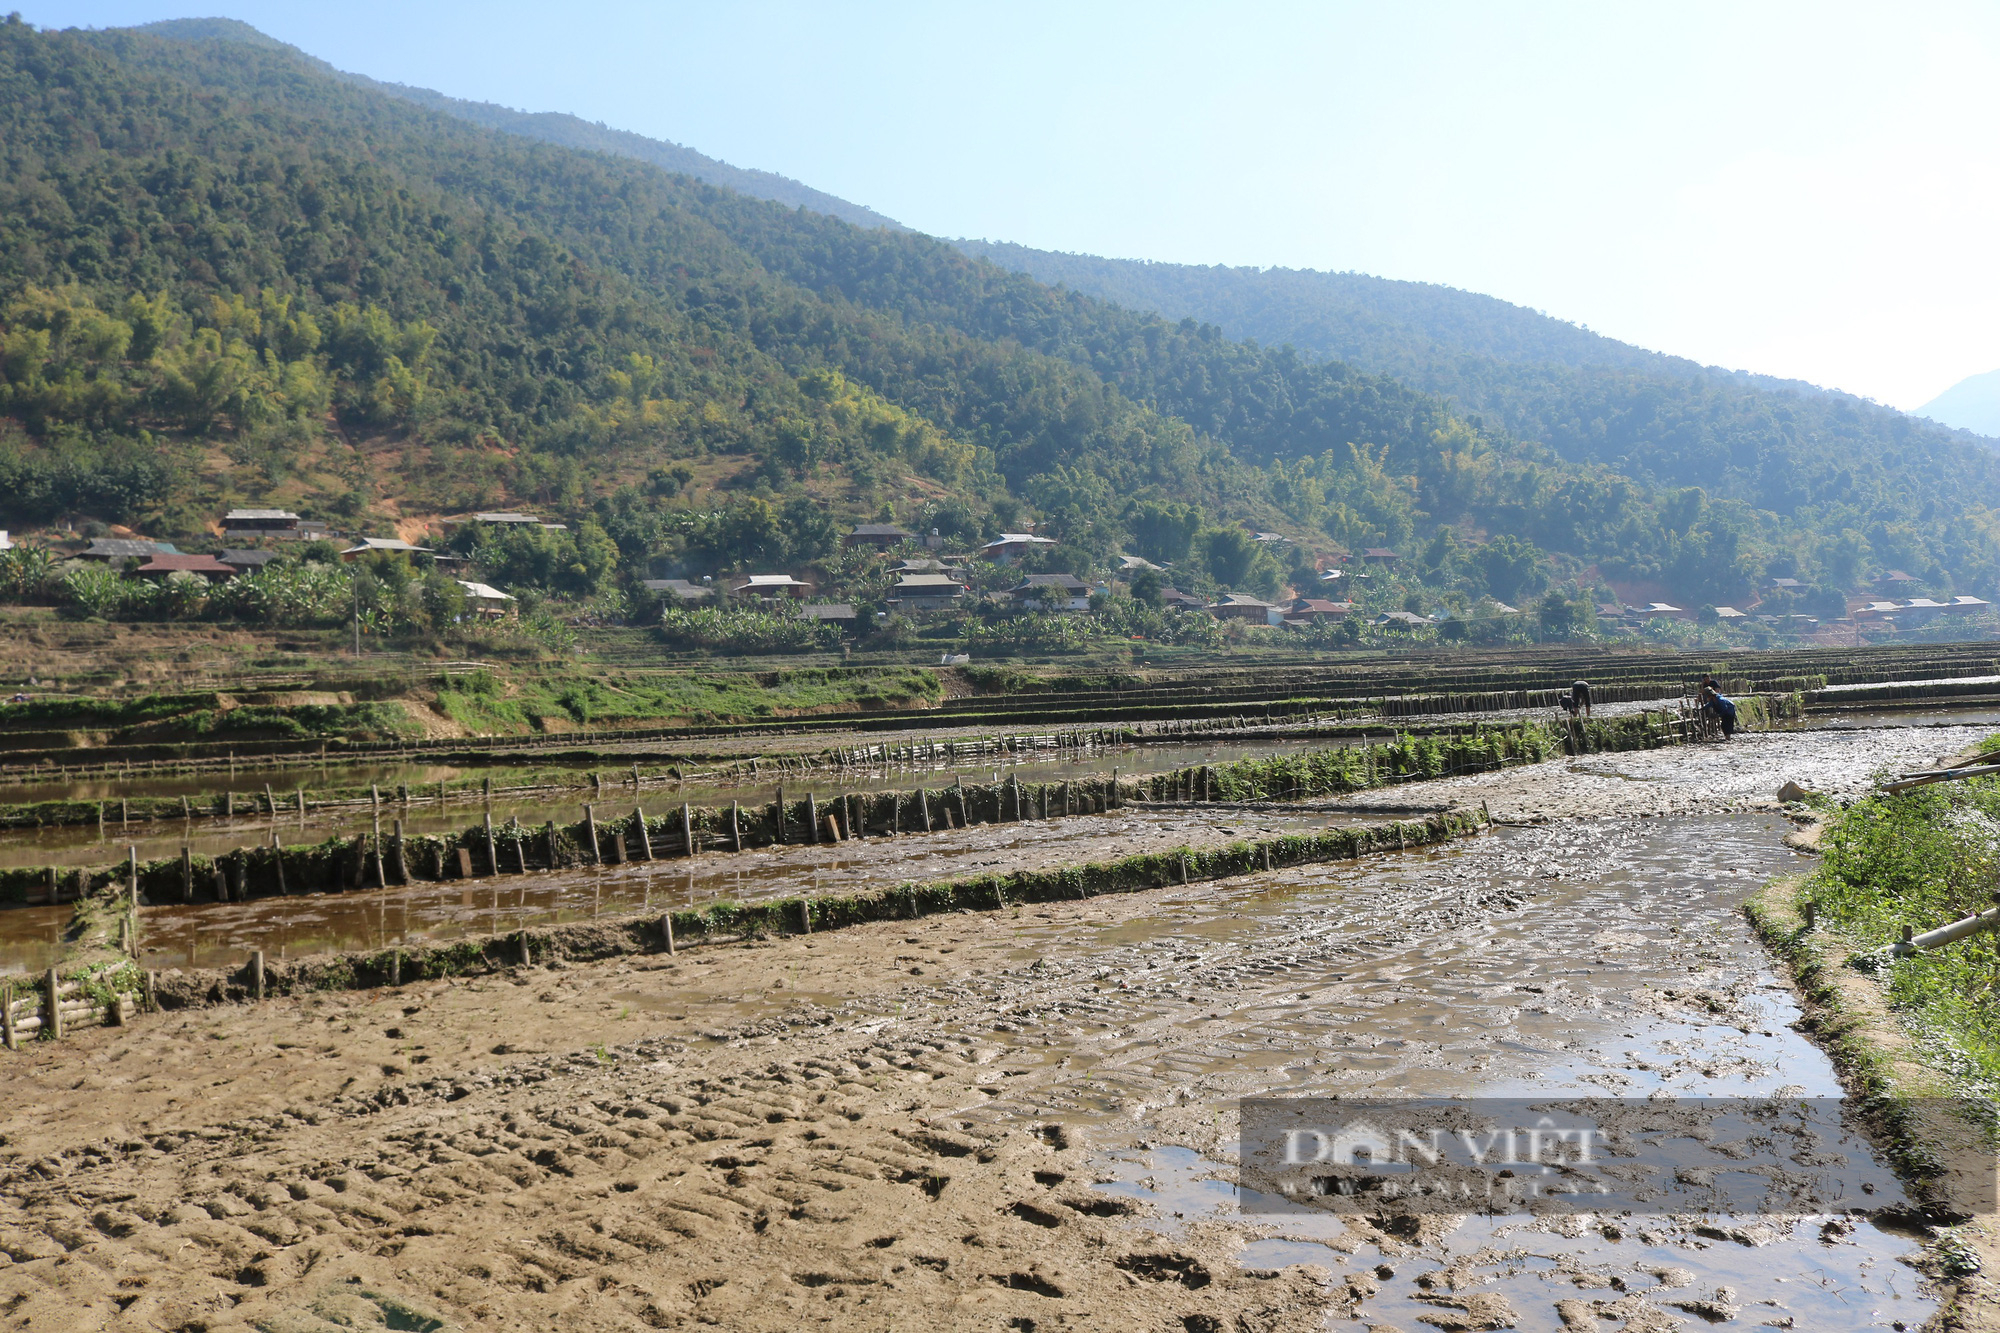 Chiếc cọn nước trị giá gần 4 triệu đồng hứa hẹn về một mùa vàng bội thu cho nông dân vùng cao Sơn La - Ảnh 6.